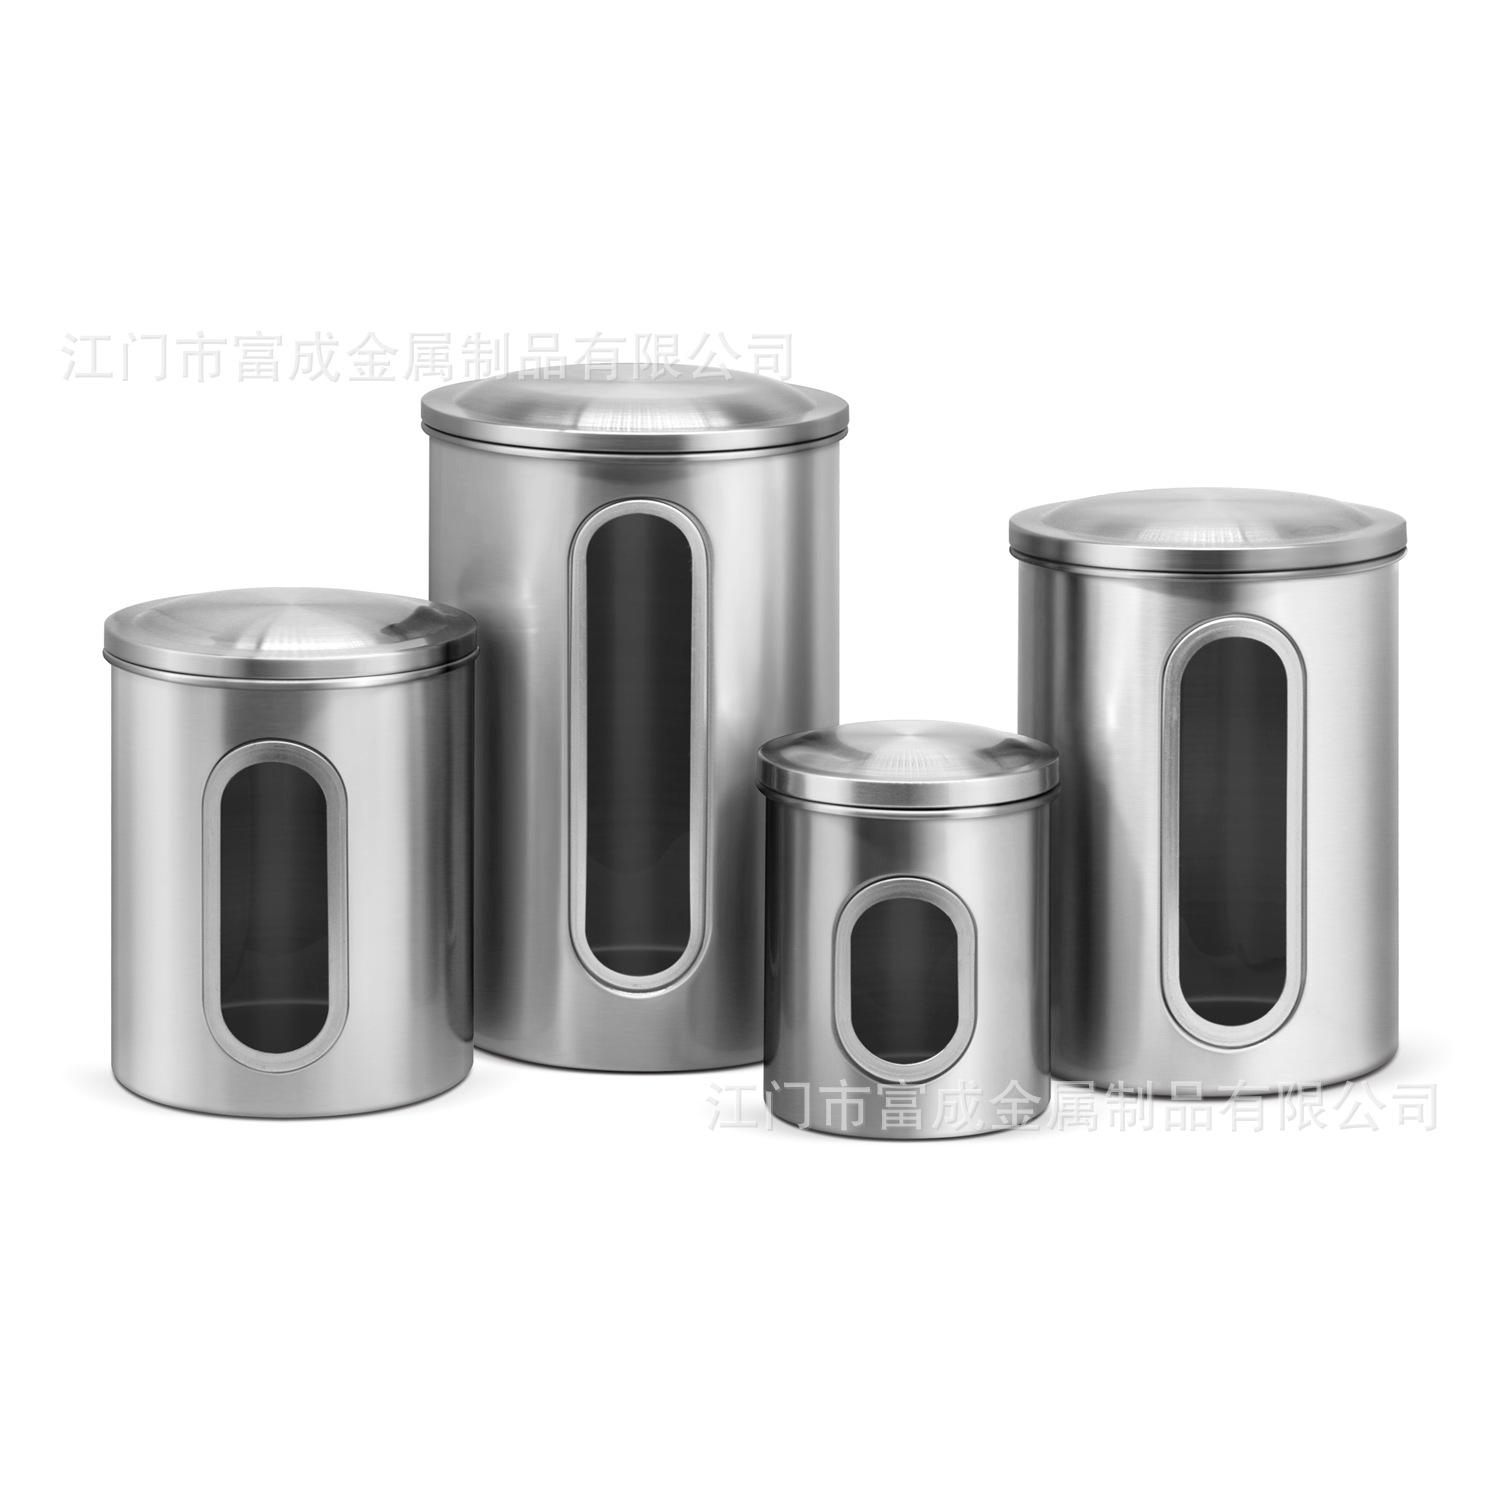 加工定制厨房收纳罐 不锈钢密封罐四件套 带窗可视食品调料储存罐